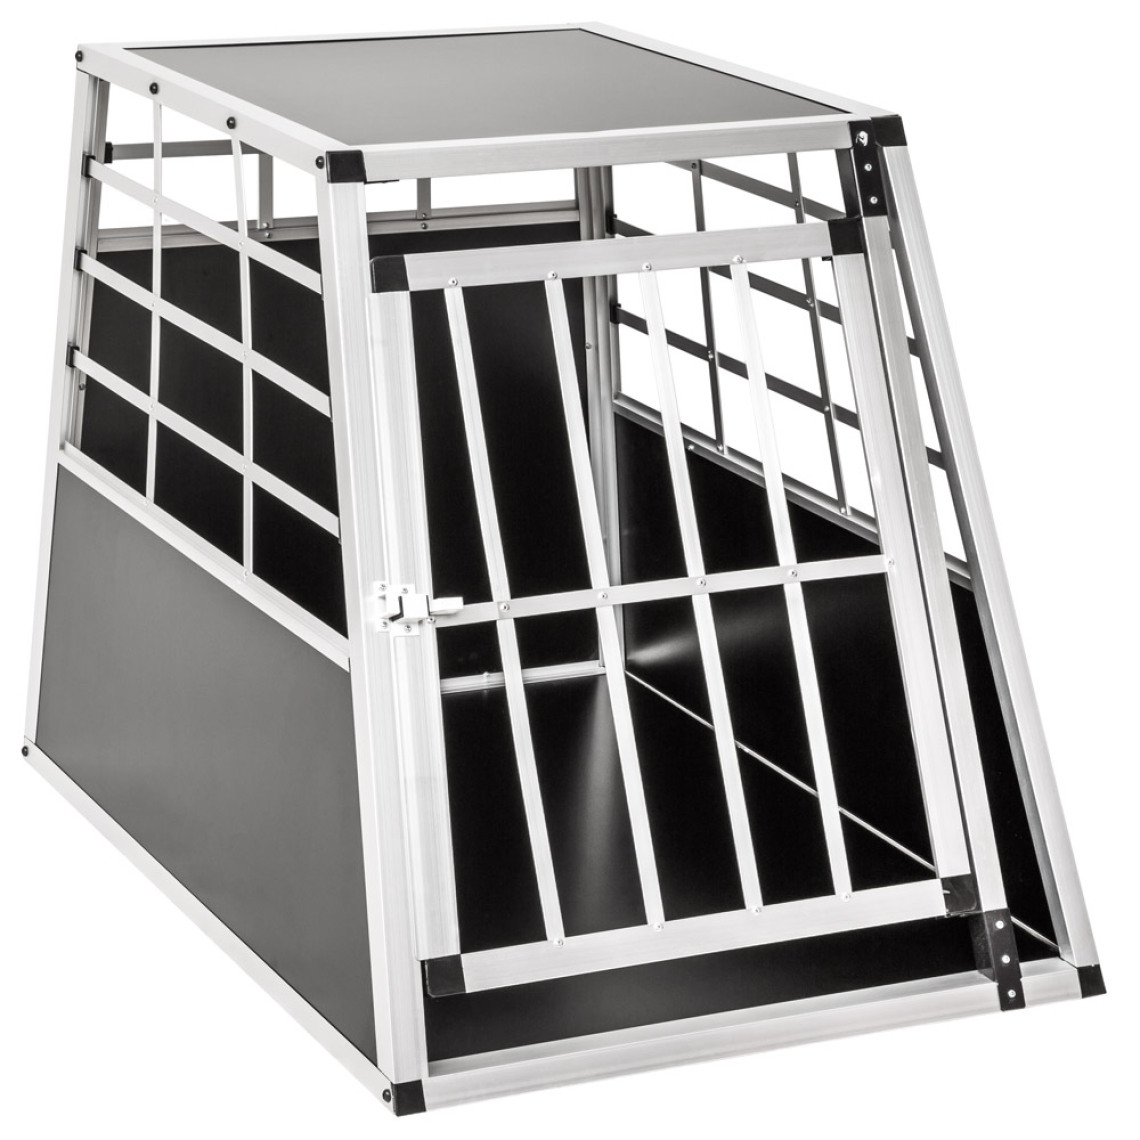 Tectake - Cage de transport pour chien simple dos droit - 65 x 90 x 69,5 cm - Equipement de transport pour chat